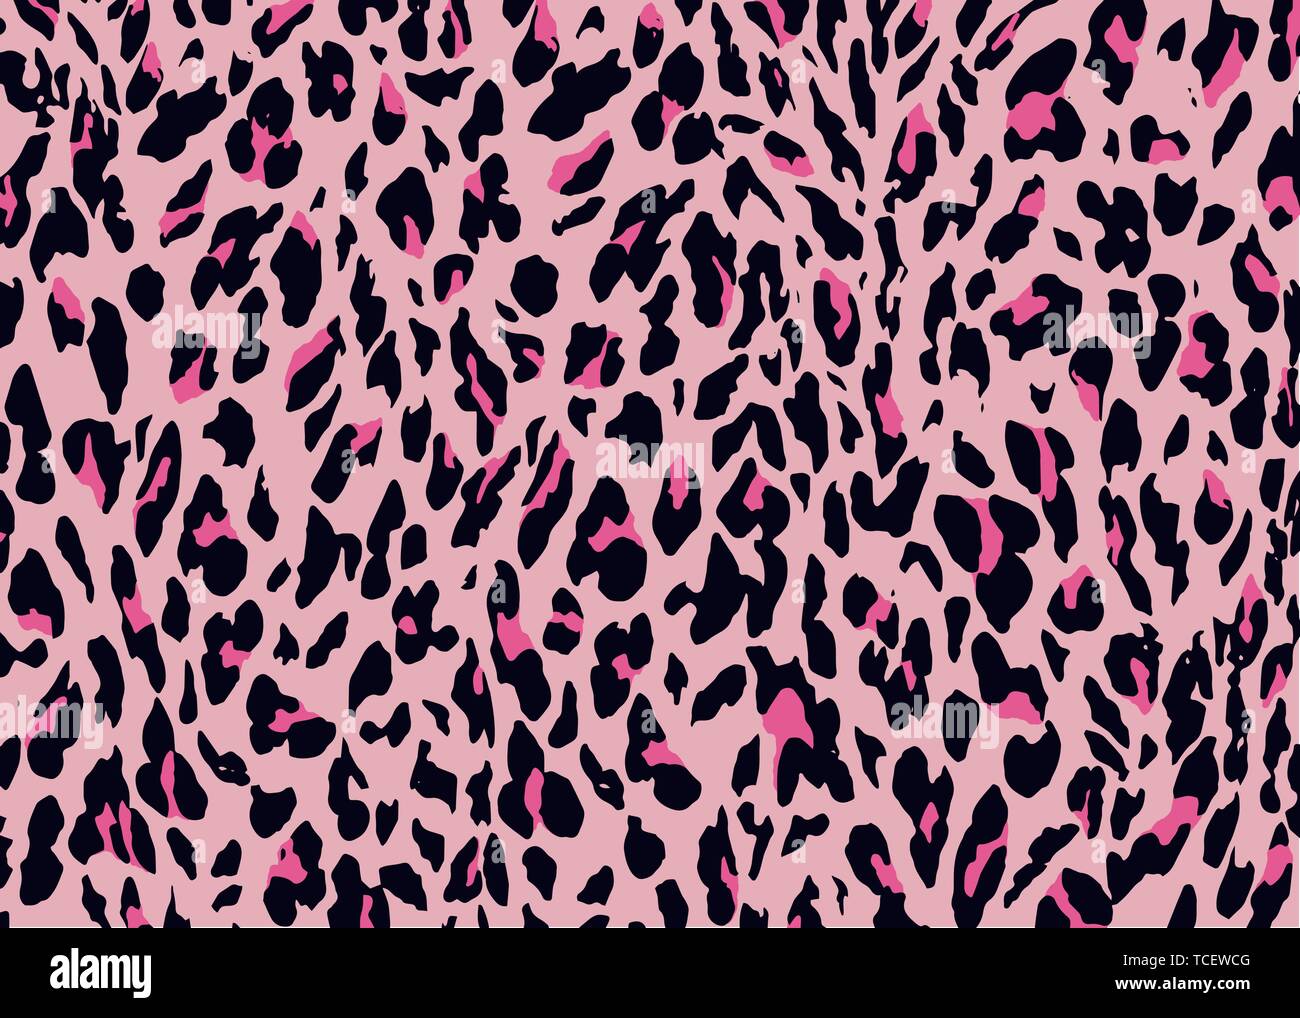 Pink Leopard skin pattern design. Leopard print vector illustration background. Wildlife fur skin design illustration for print, web, home decor, Stock Vector